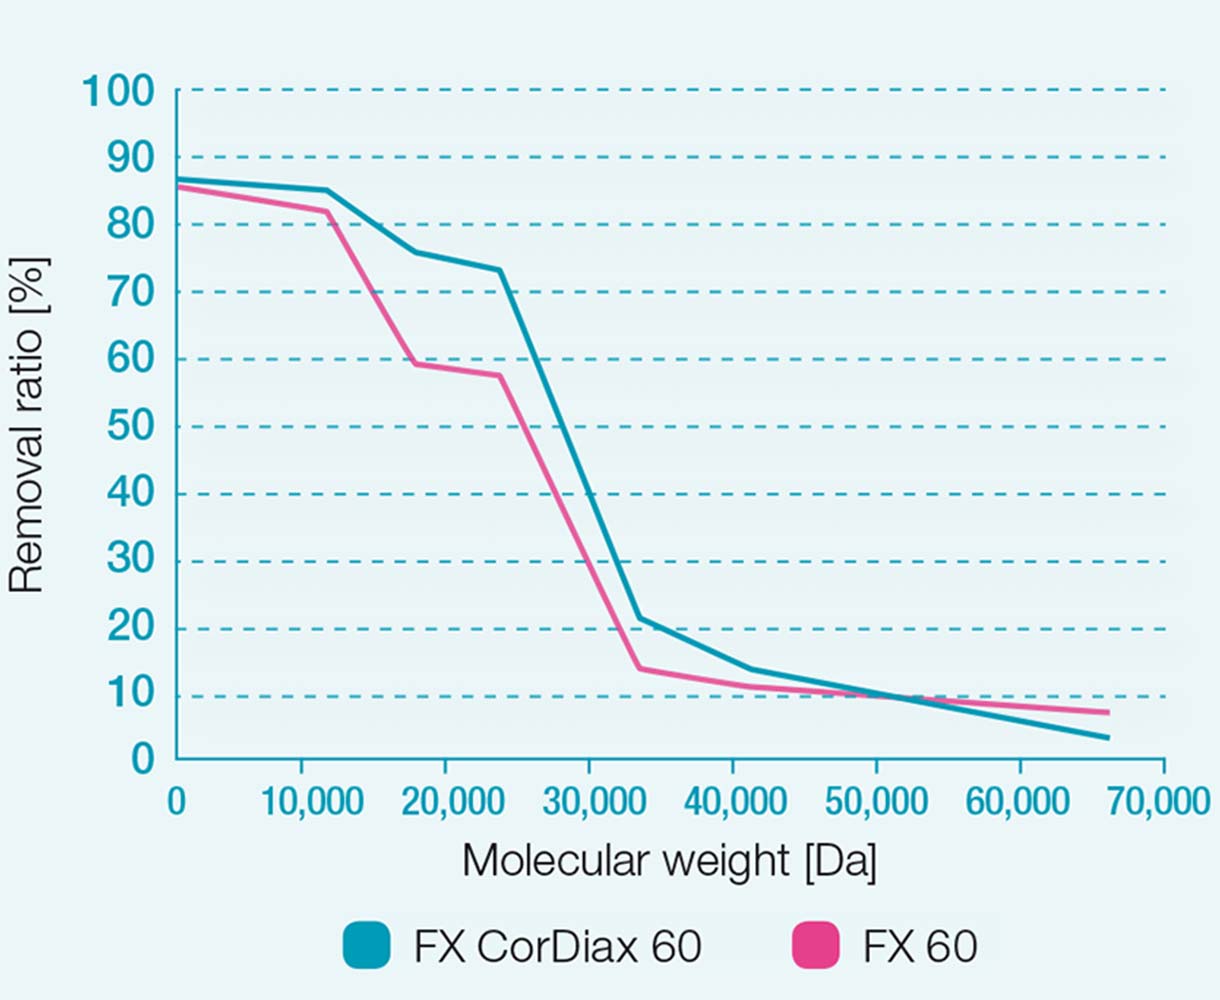 Współczynnik usuwania w dializatorach FX 60 oraz FX CorDiax 60